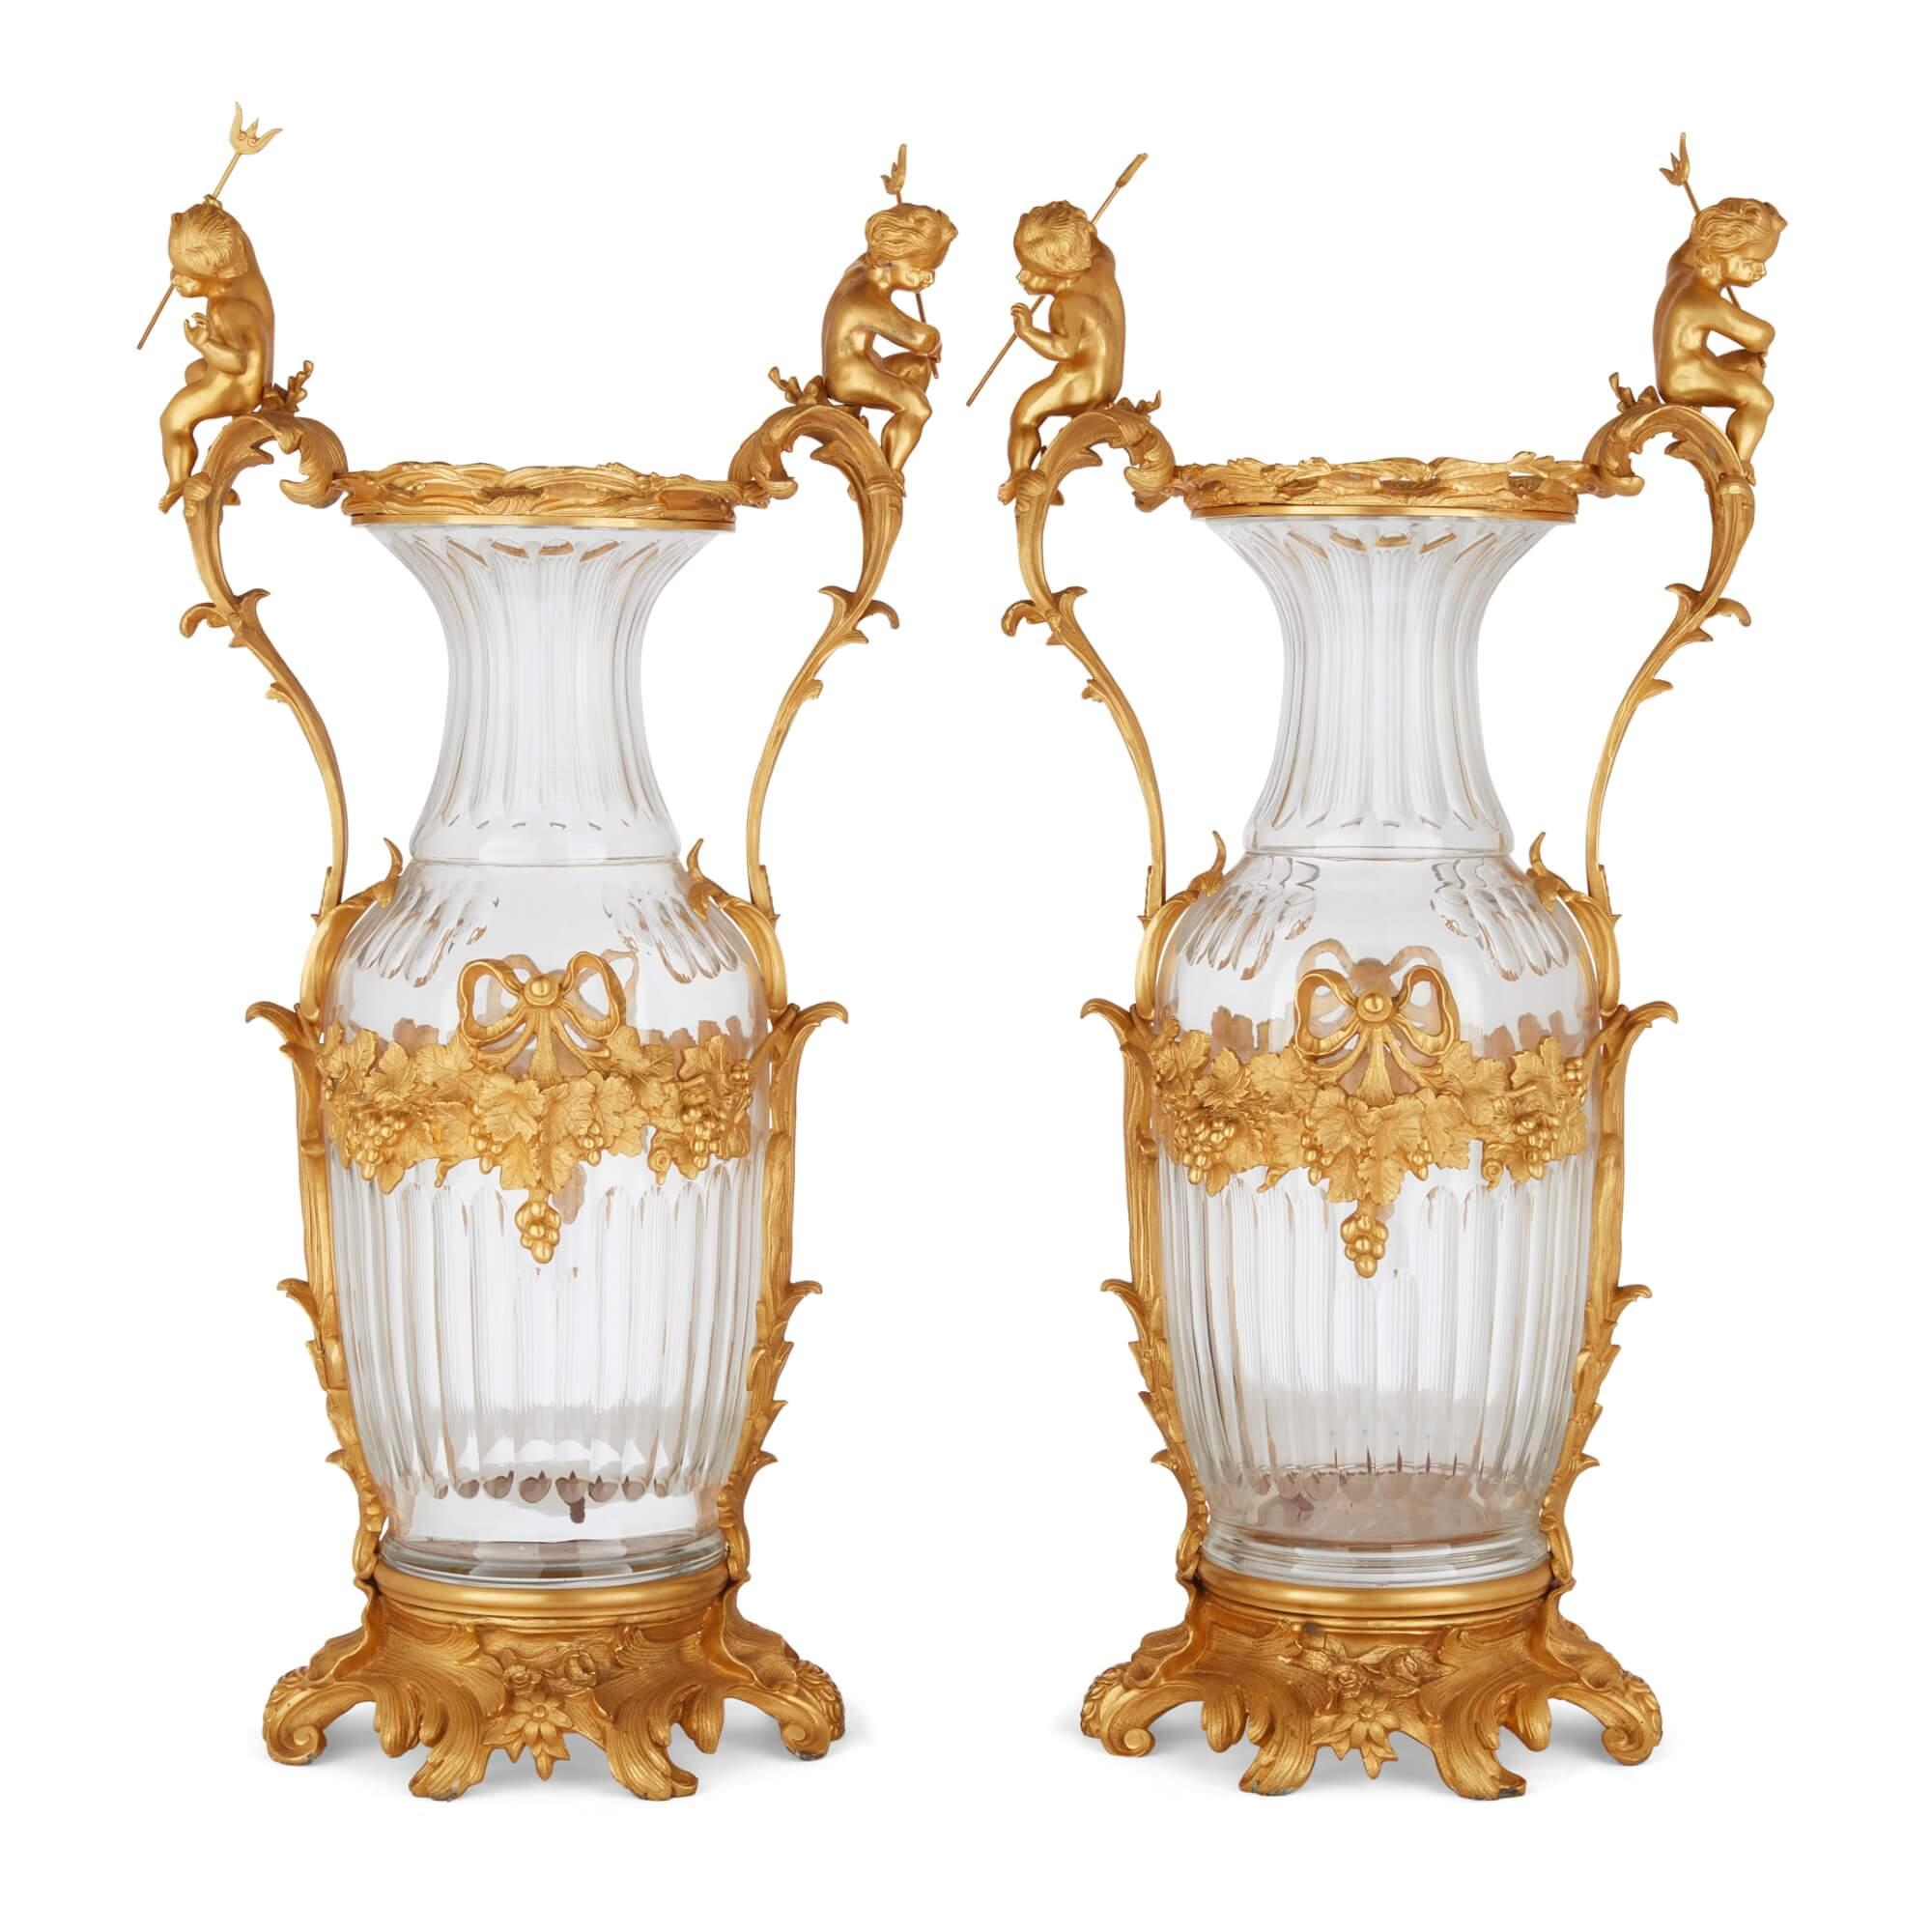 Großes Paar französischer Vasen aus geschliffenem Glas mit Ormolu-Montierung im Rokokostil 
Französisch, 20. Jahrhundert 
Höhe 89cm, Breite 43cm, Tiefe 32cm

Die Vasen sind aus hochwertigen MATERIALEN gefertigt, ihr Design zelebriert den